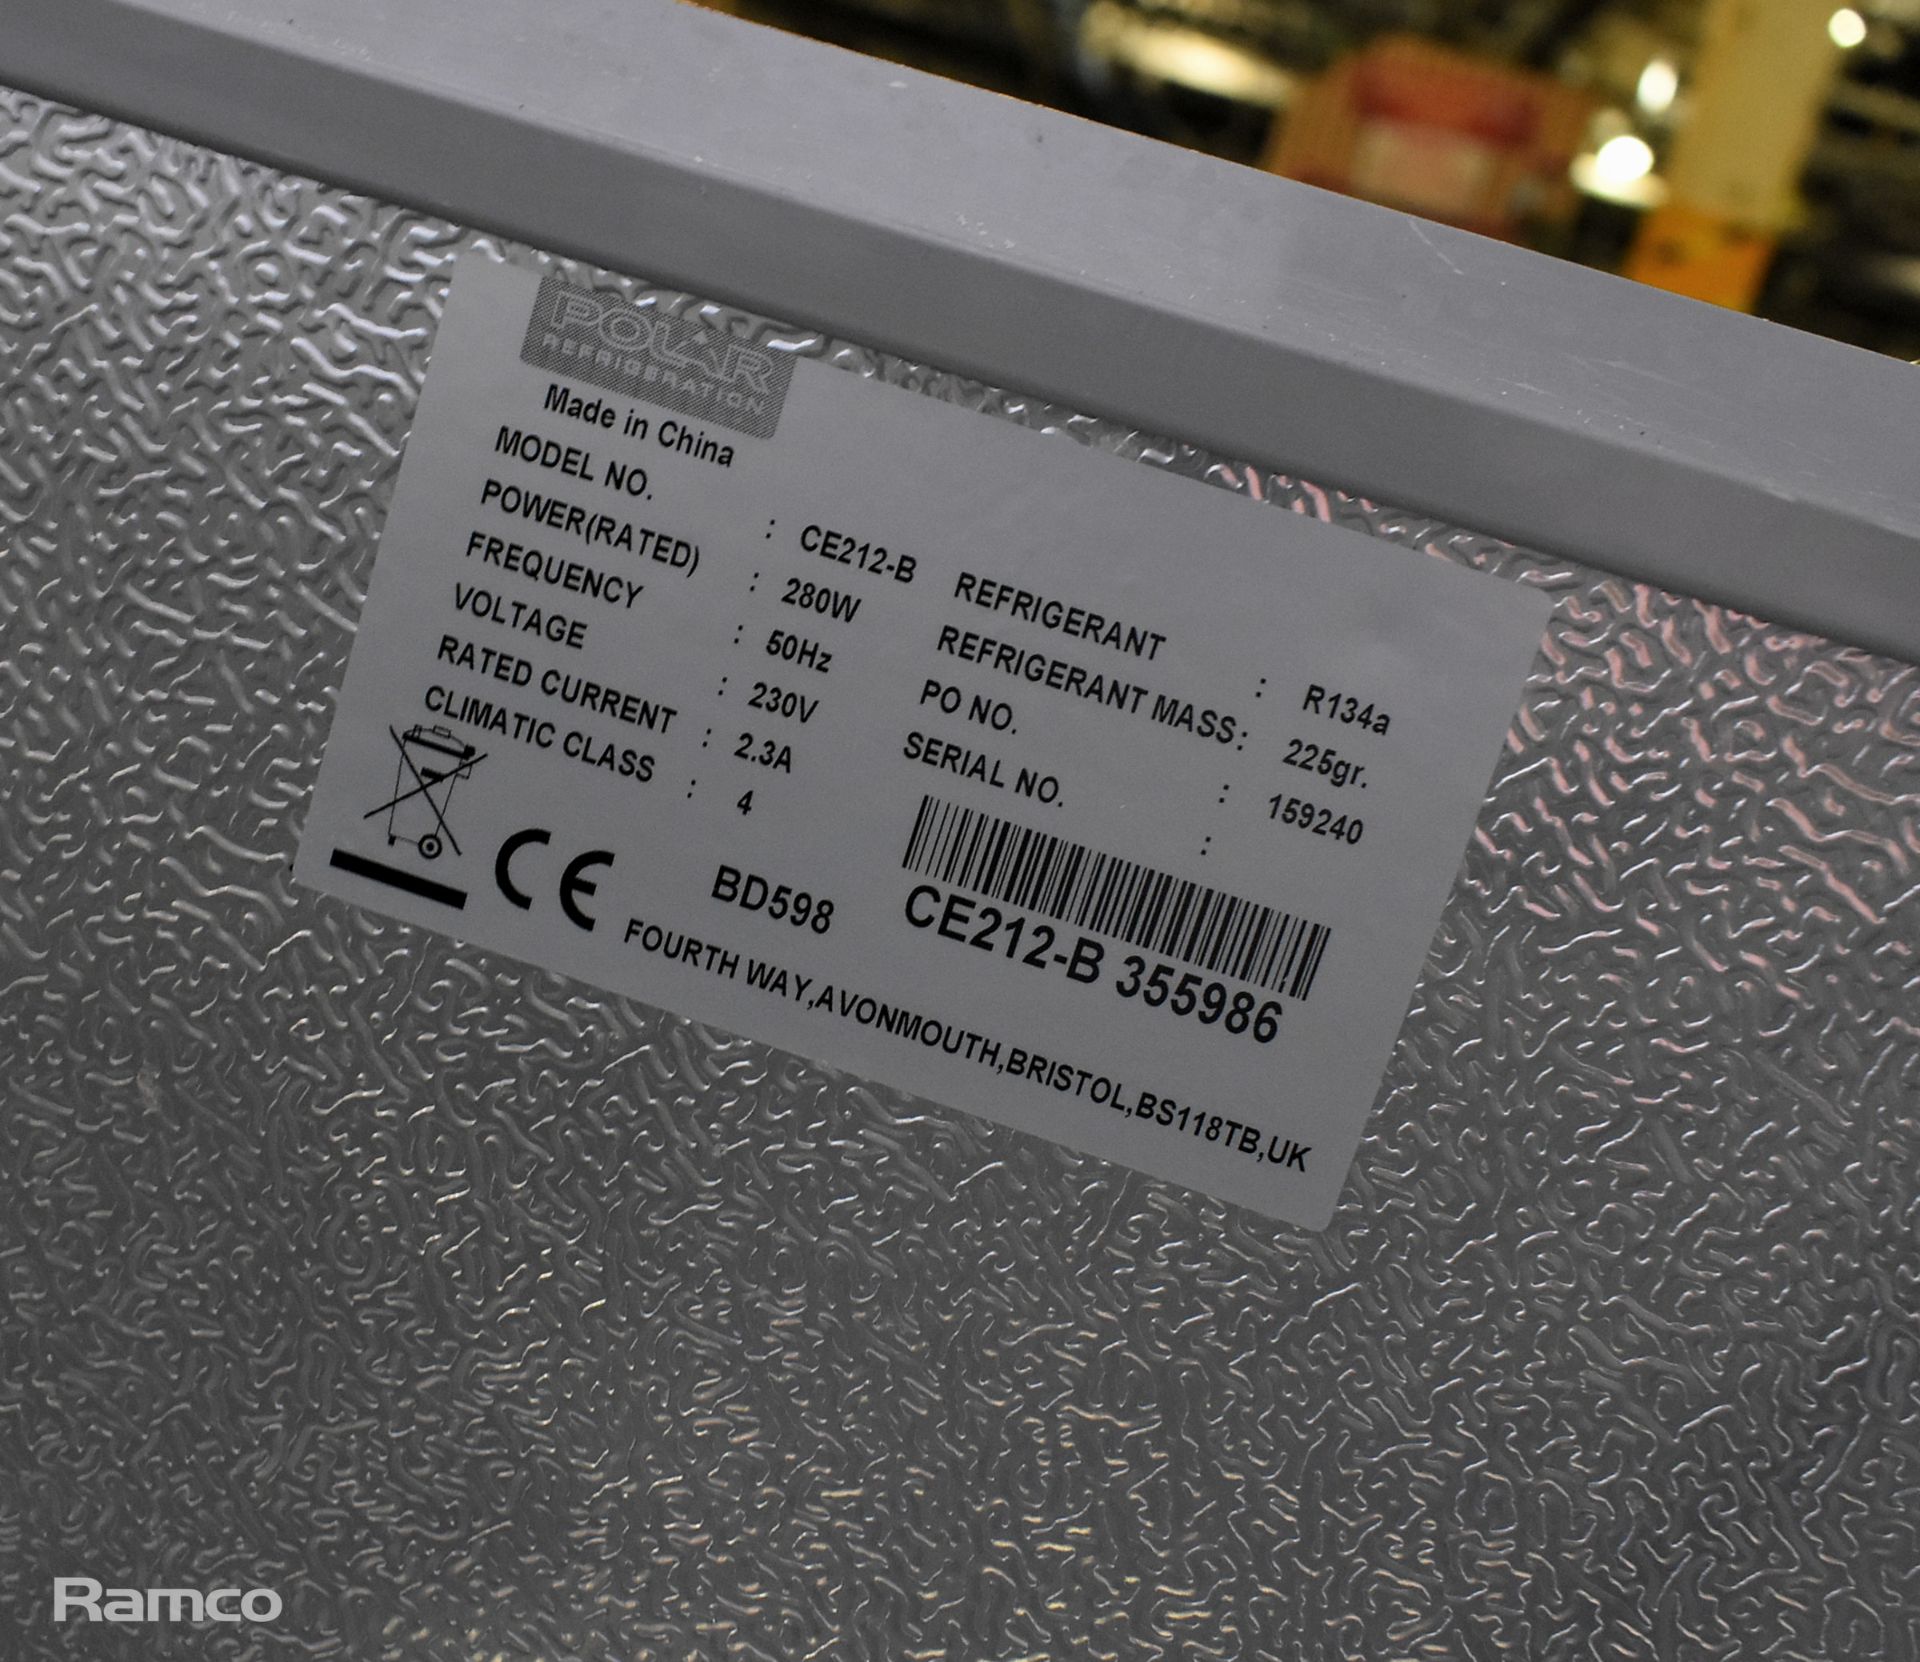 Polar CE212-B chest freezer - W 1610 x D 720 x H 950mm - Image 4 of 8